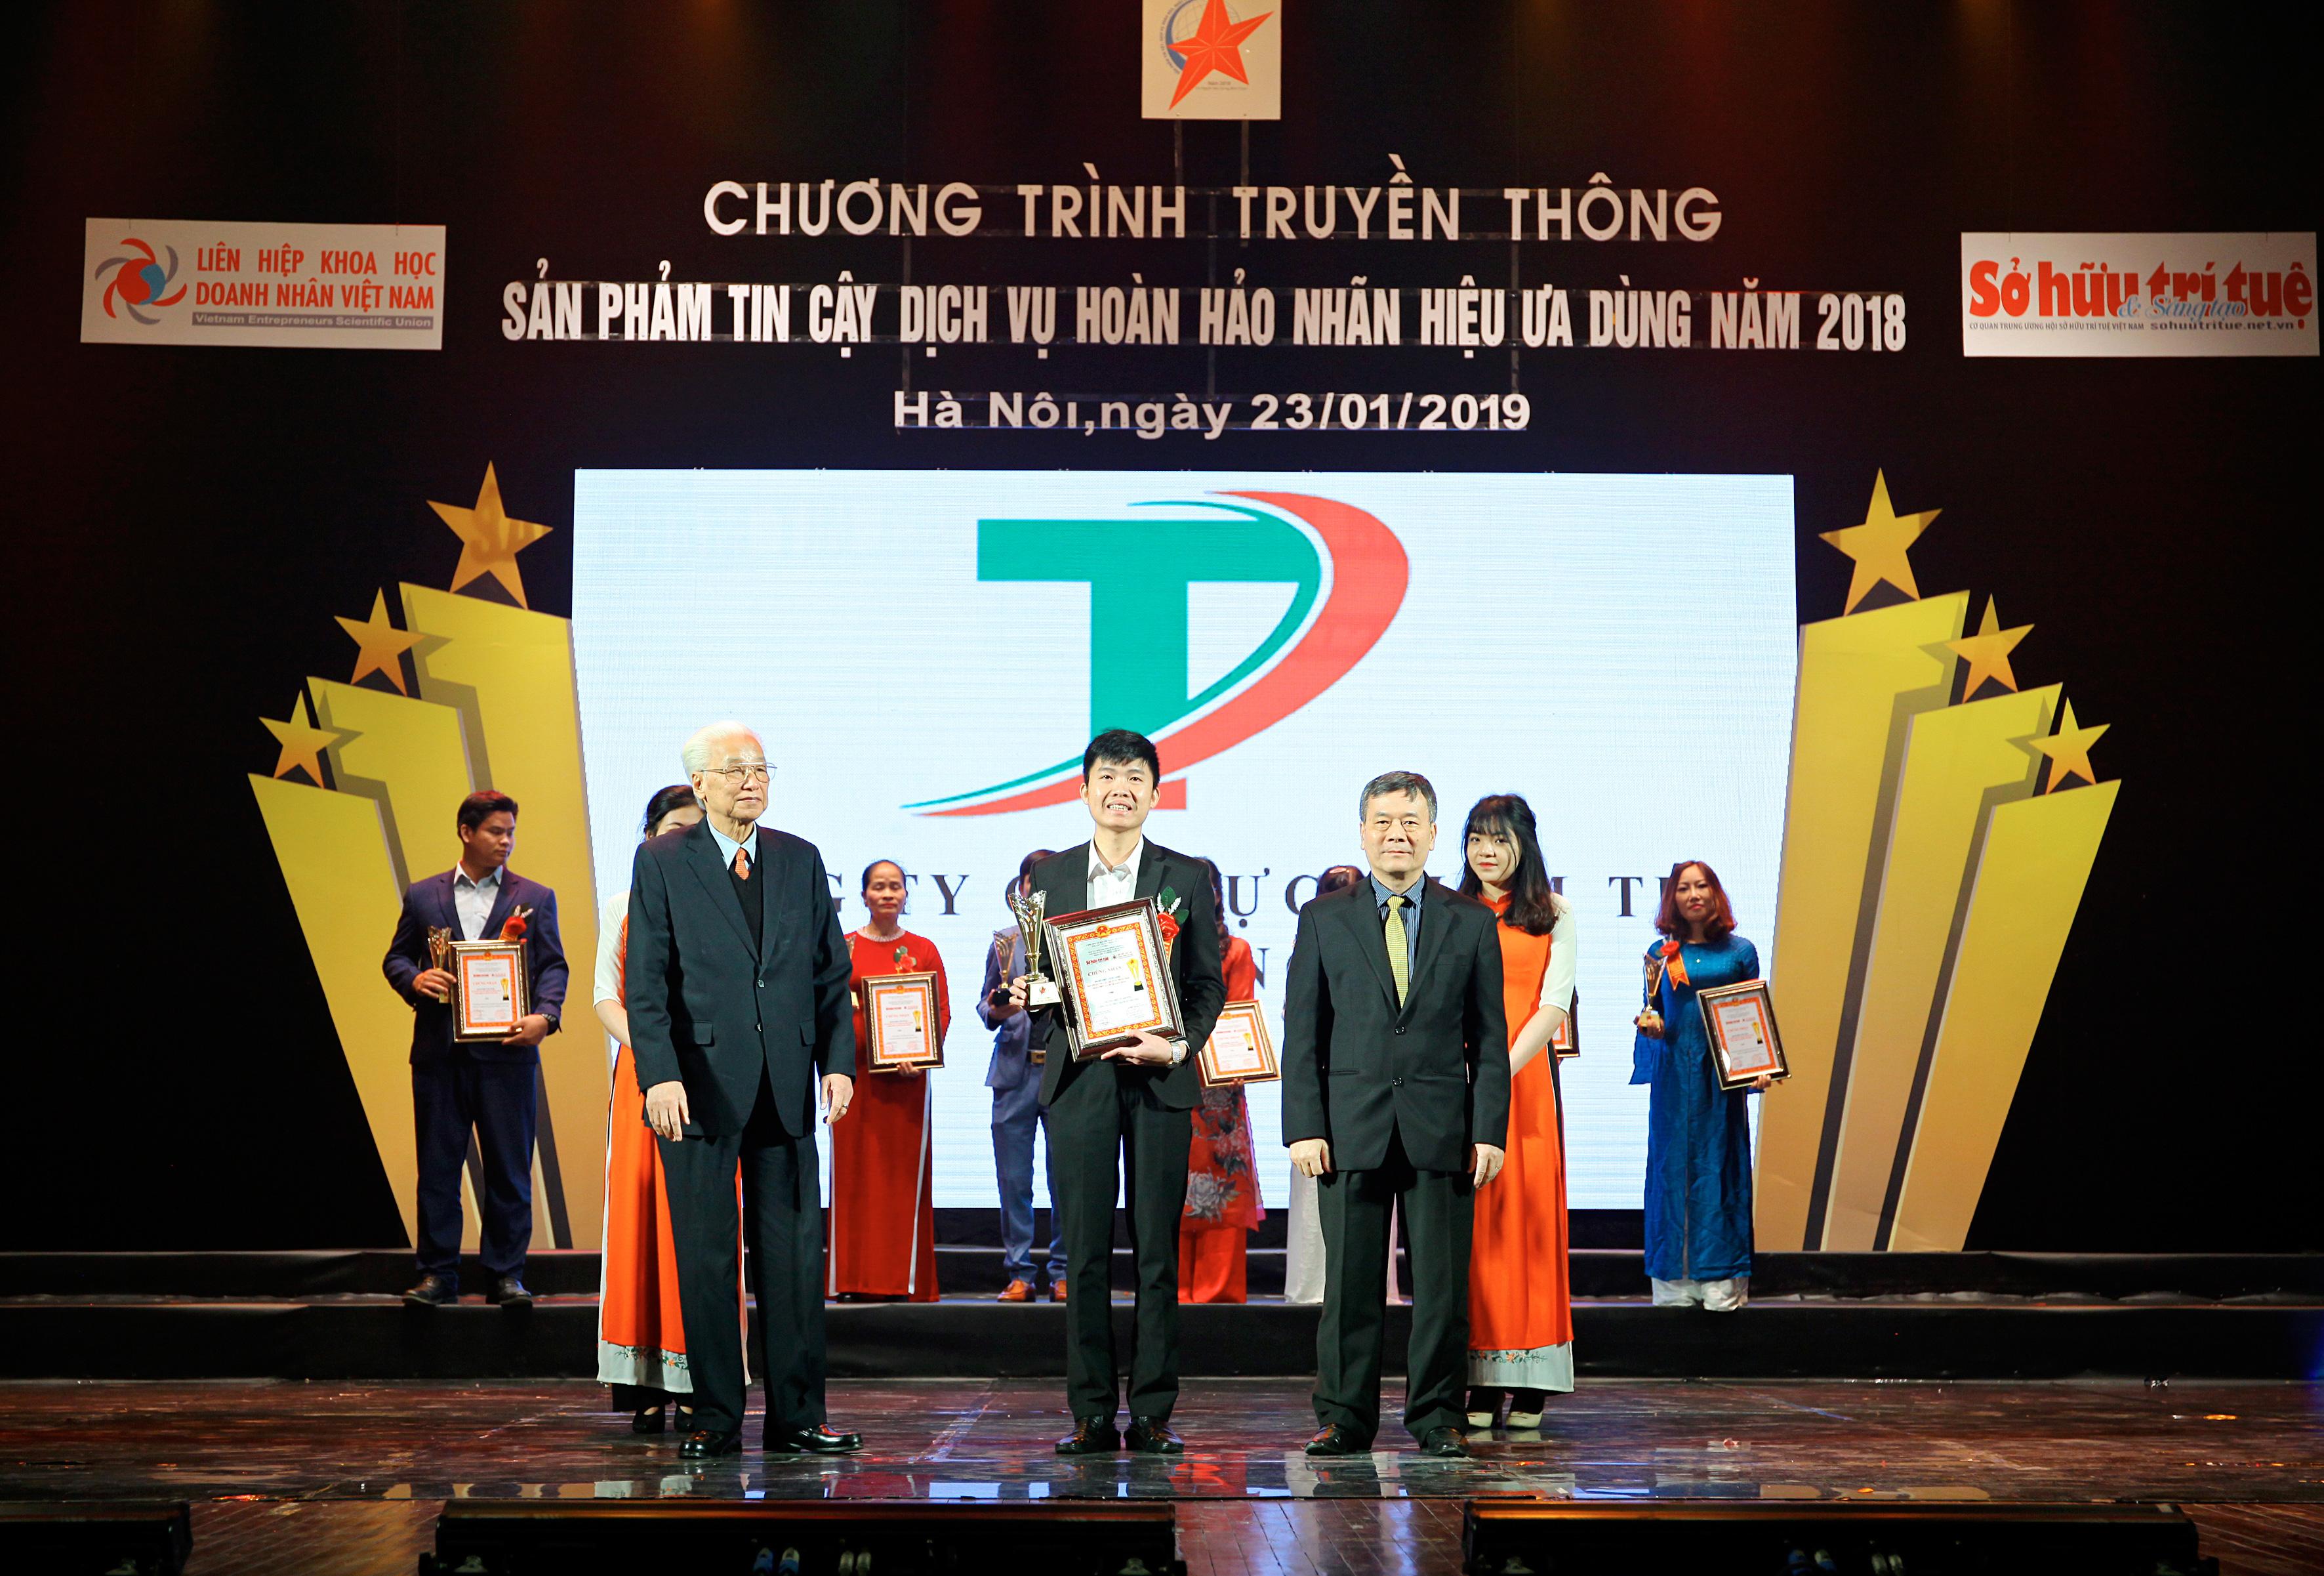 Công ty CP Thực phẩm Tứ Phương nhận giải thưởng “Sản phẩm tin cậy, dịch vụ hoàn hảo, dịch vụ ưa dùng năm 2018” do Hội Sở hữu trí tuệ Việt Nam-Tạp chí Sở hữu trí tuệ và sáng tạo bình chọn.